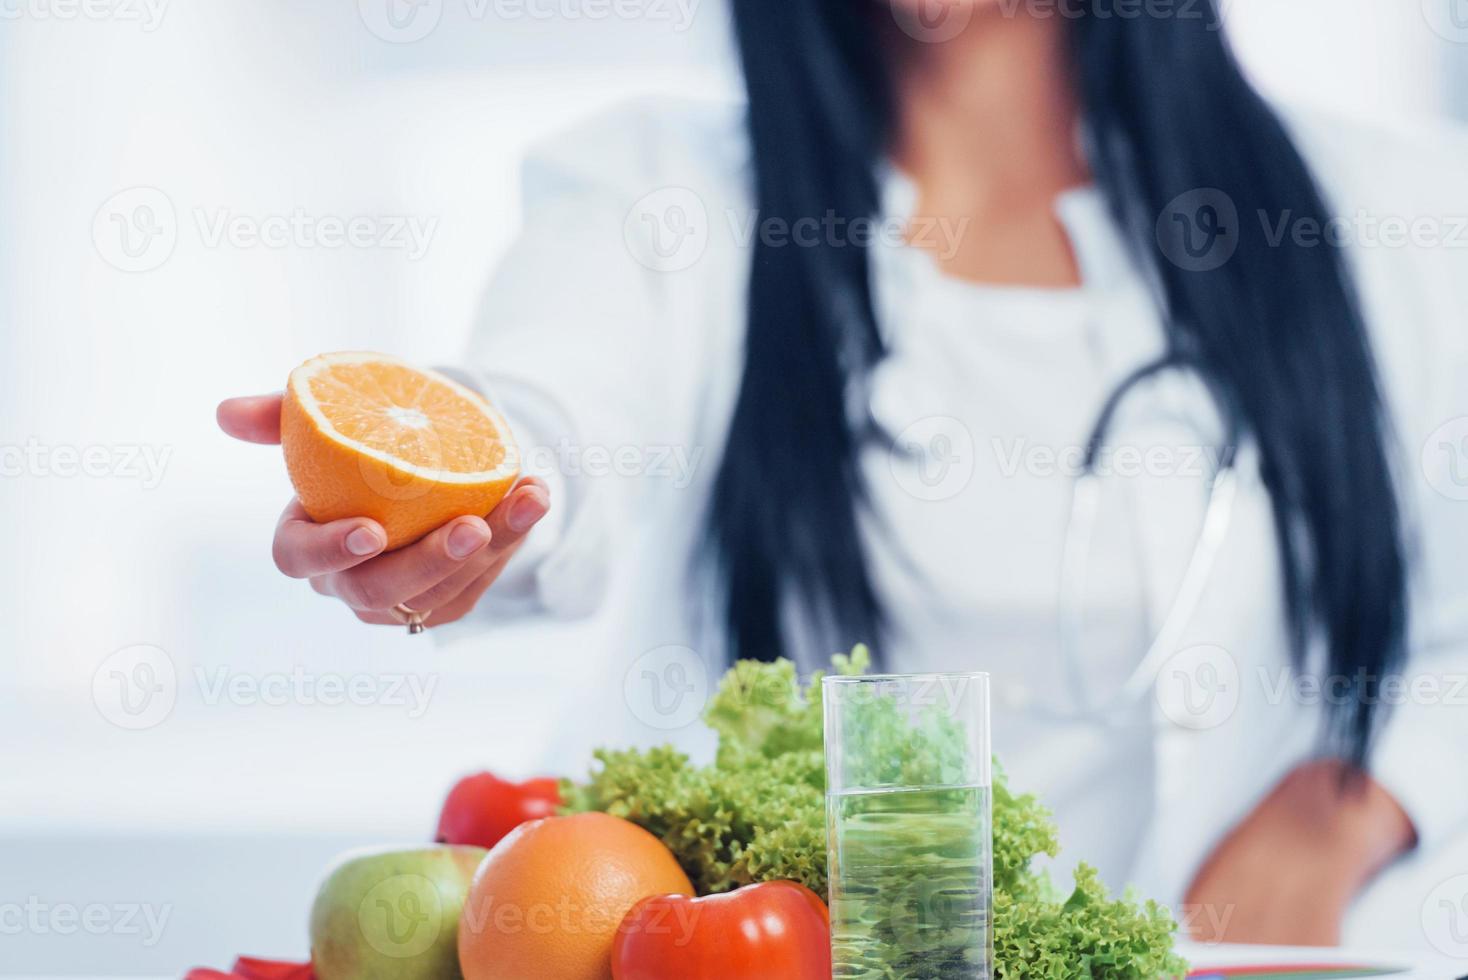 nutritionniste en blouse blanche tenant une orange à la main photo